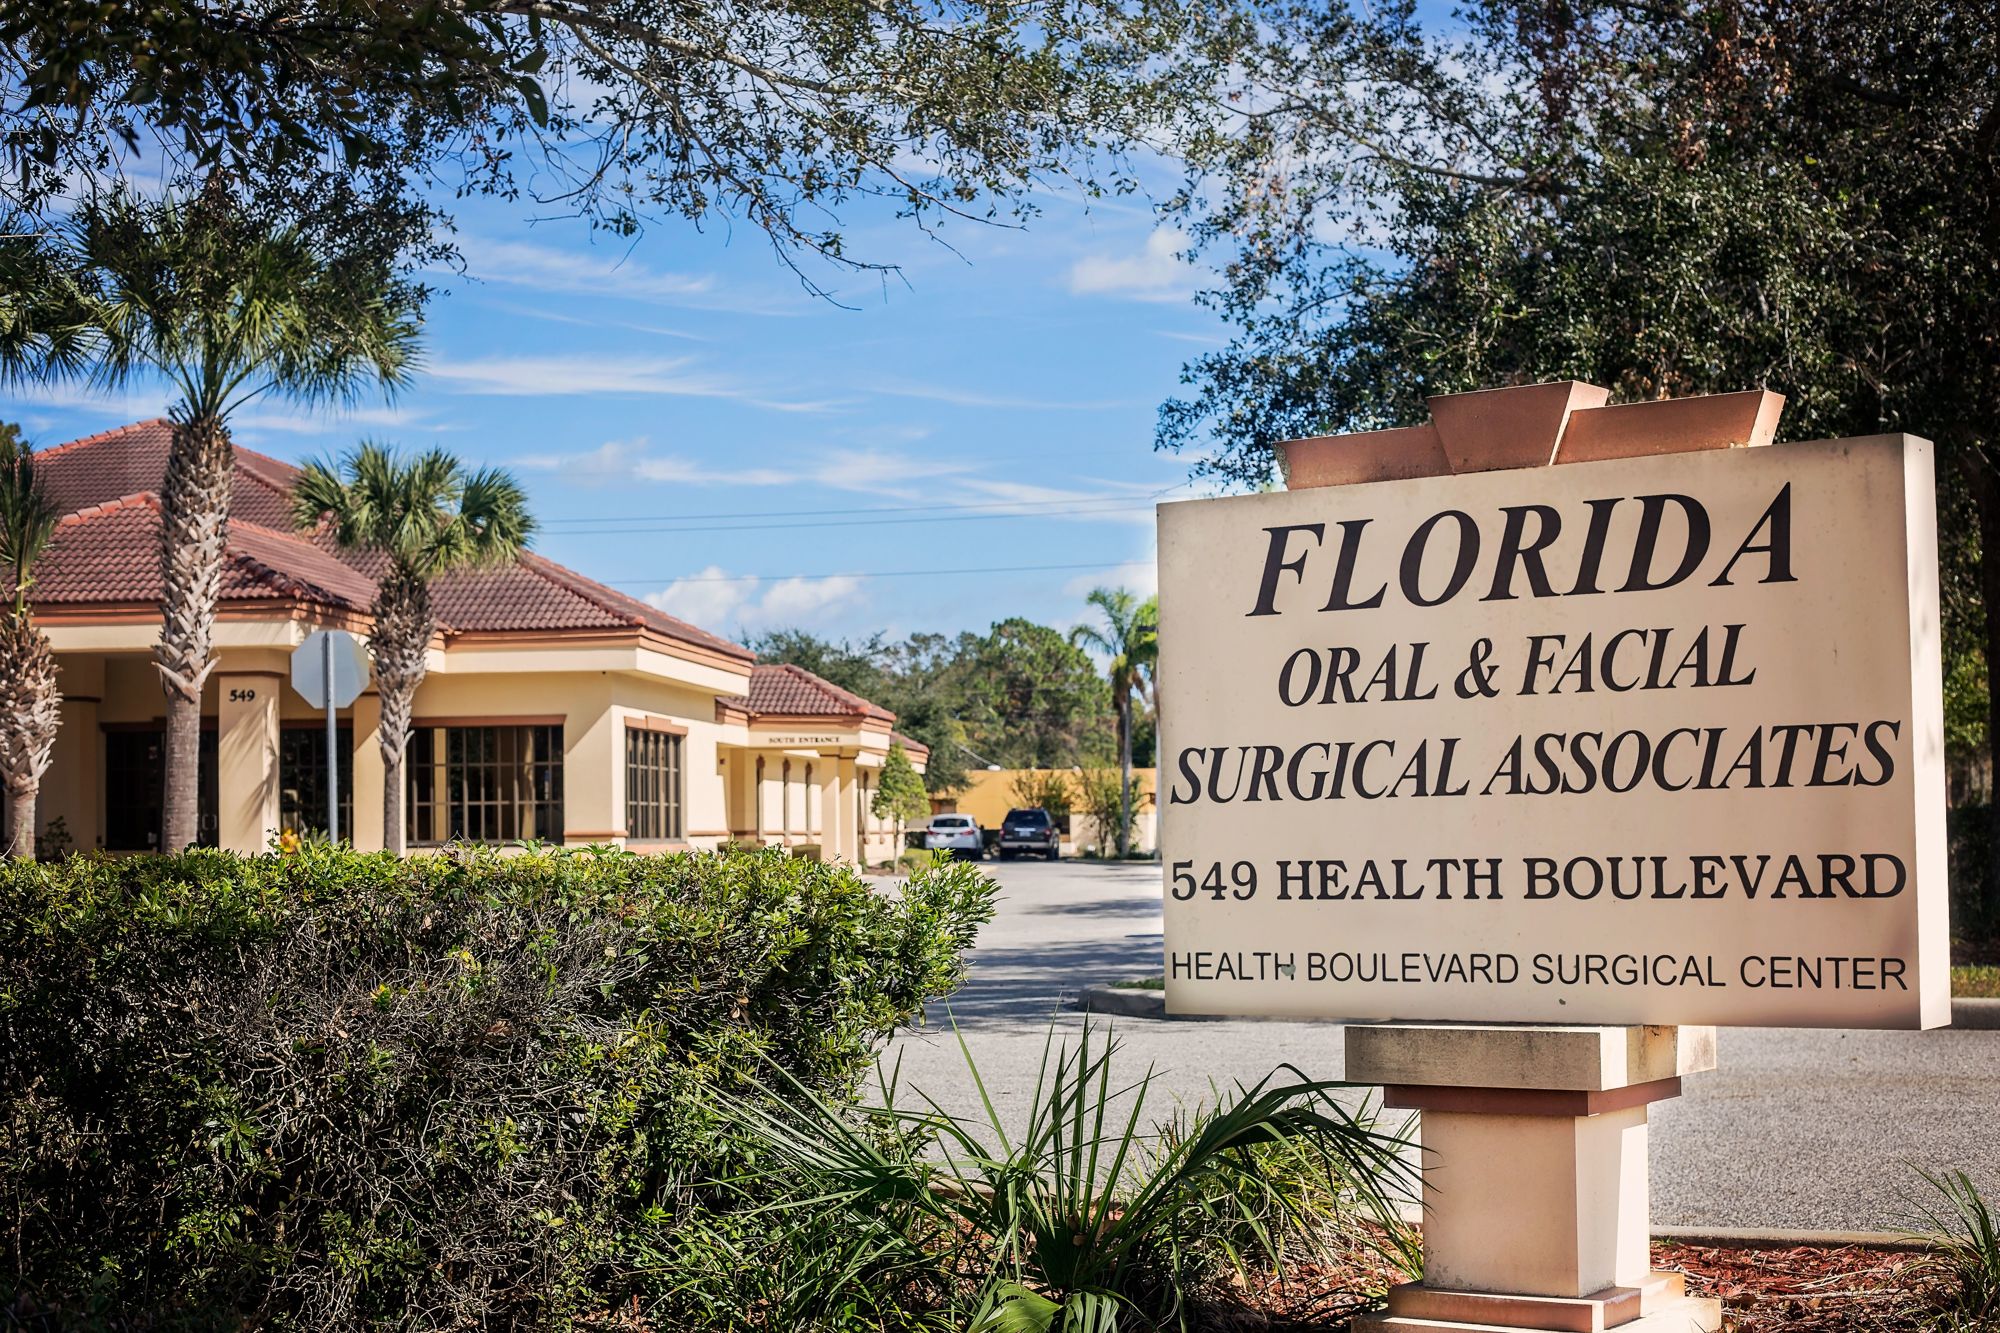 Florida Oral & Facial Surgical Associates. Courtesy photo